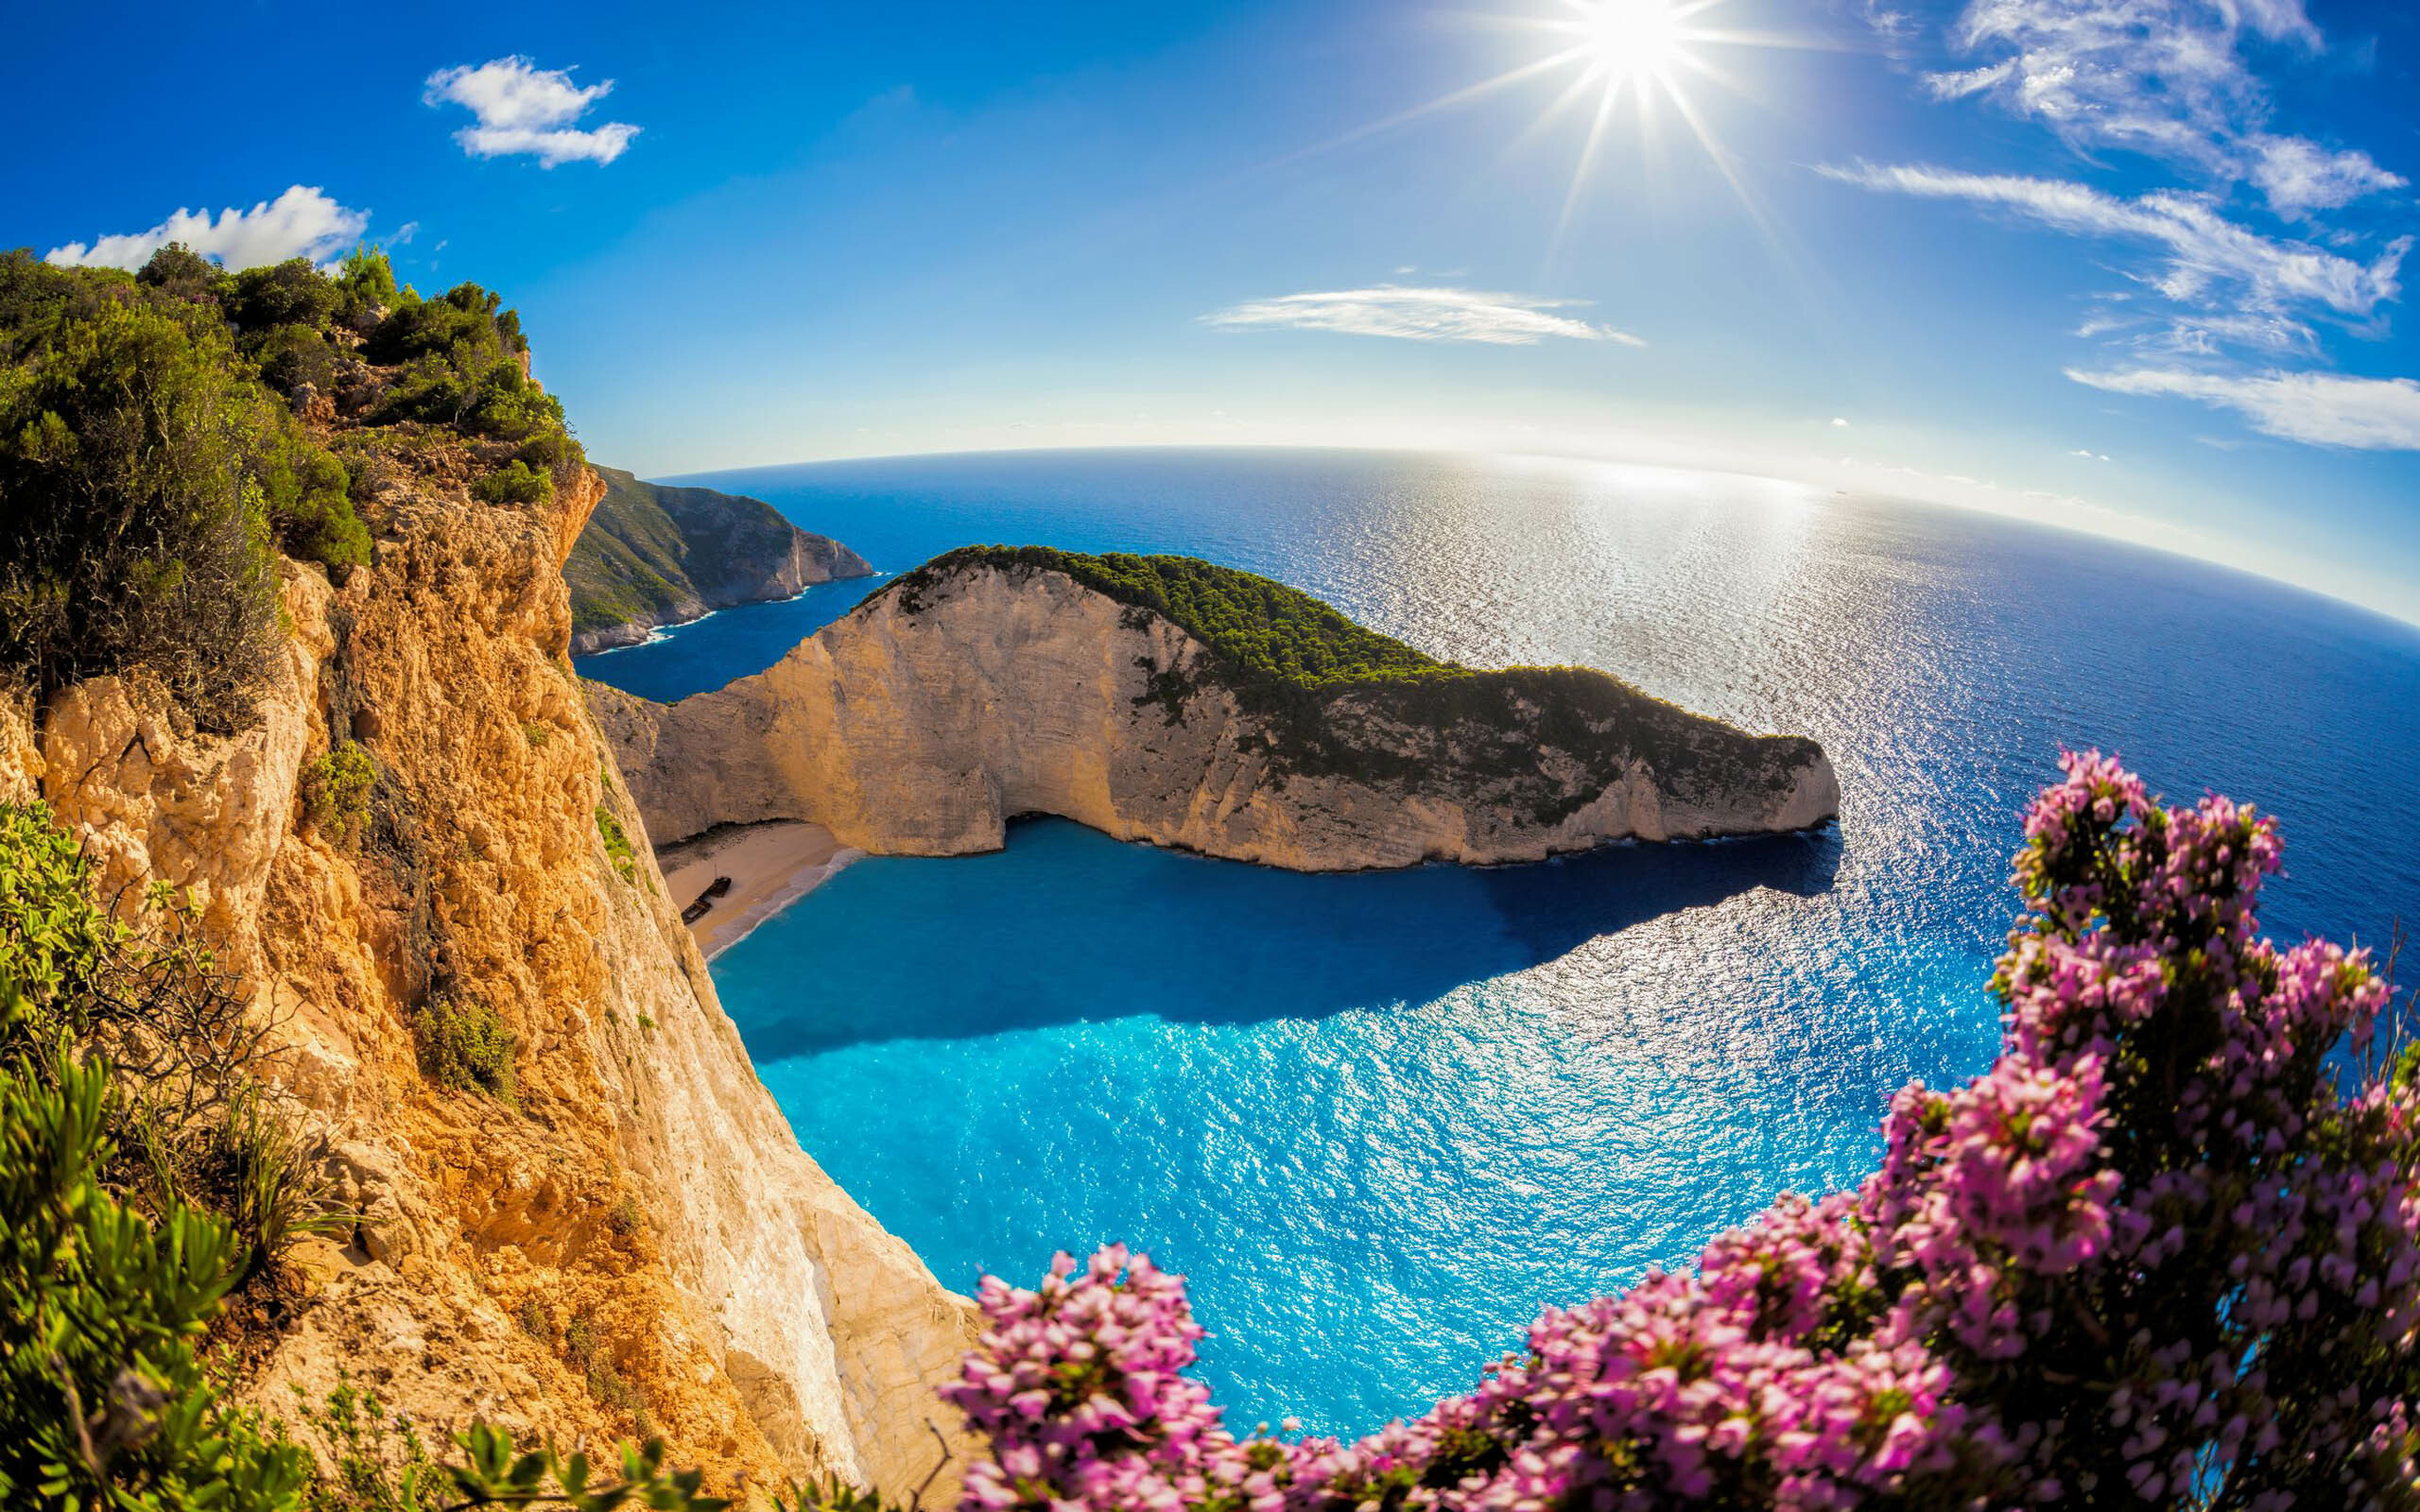 Greece: Zakynthos Island, Sea, Sun, Sky, Recreation. 2560x1600 HD Wallpaper.